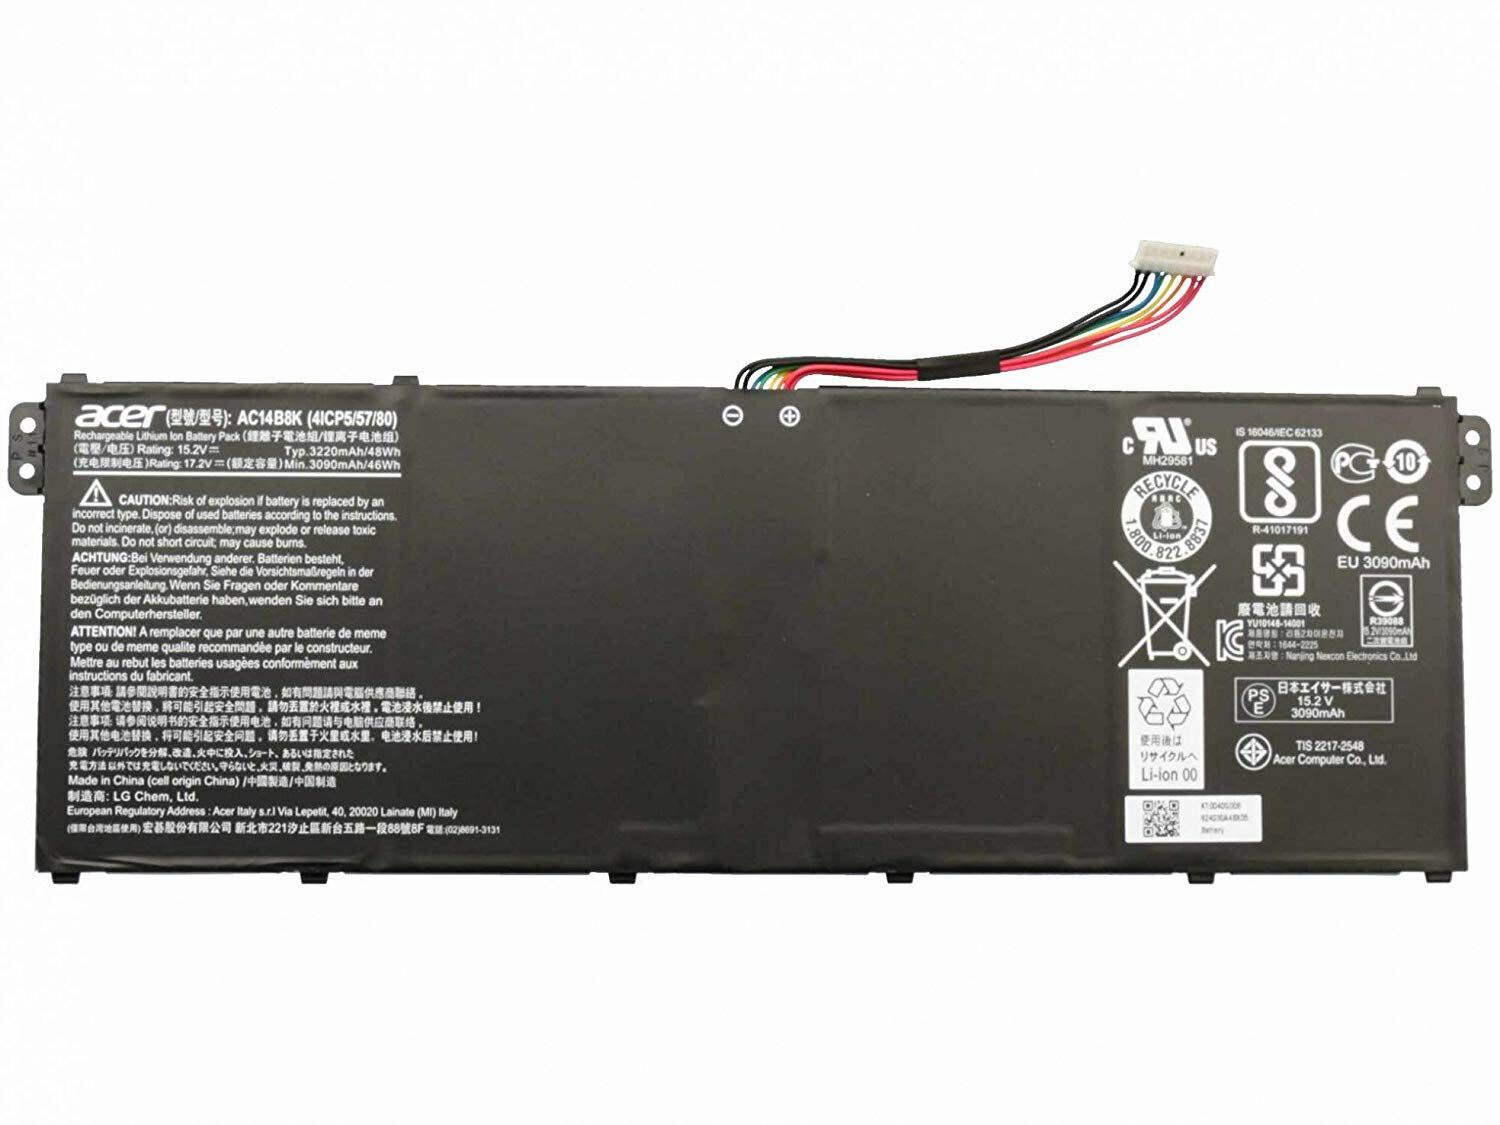 AC14B3K AC14B8K Battery for Acer Chromebook CB3-531 CB5-571 CB3-111 C810 C910